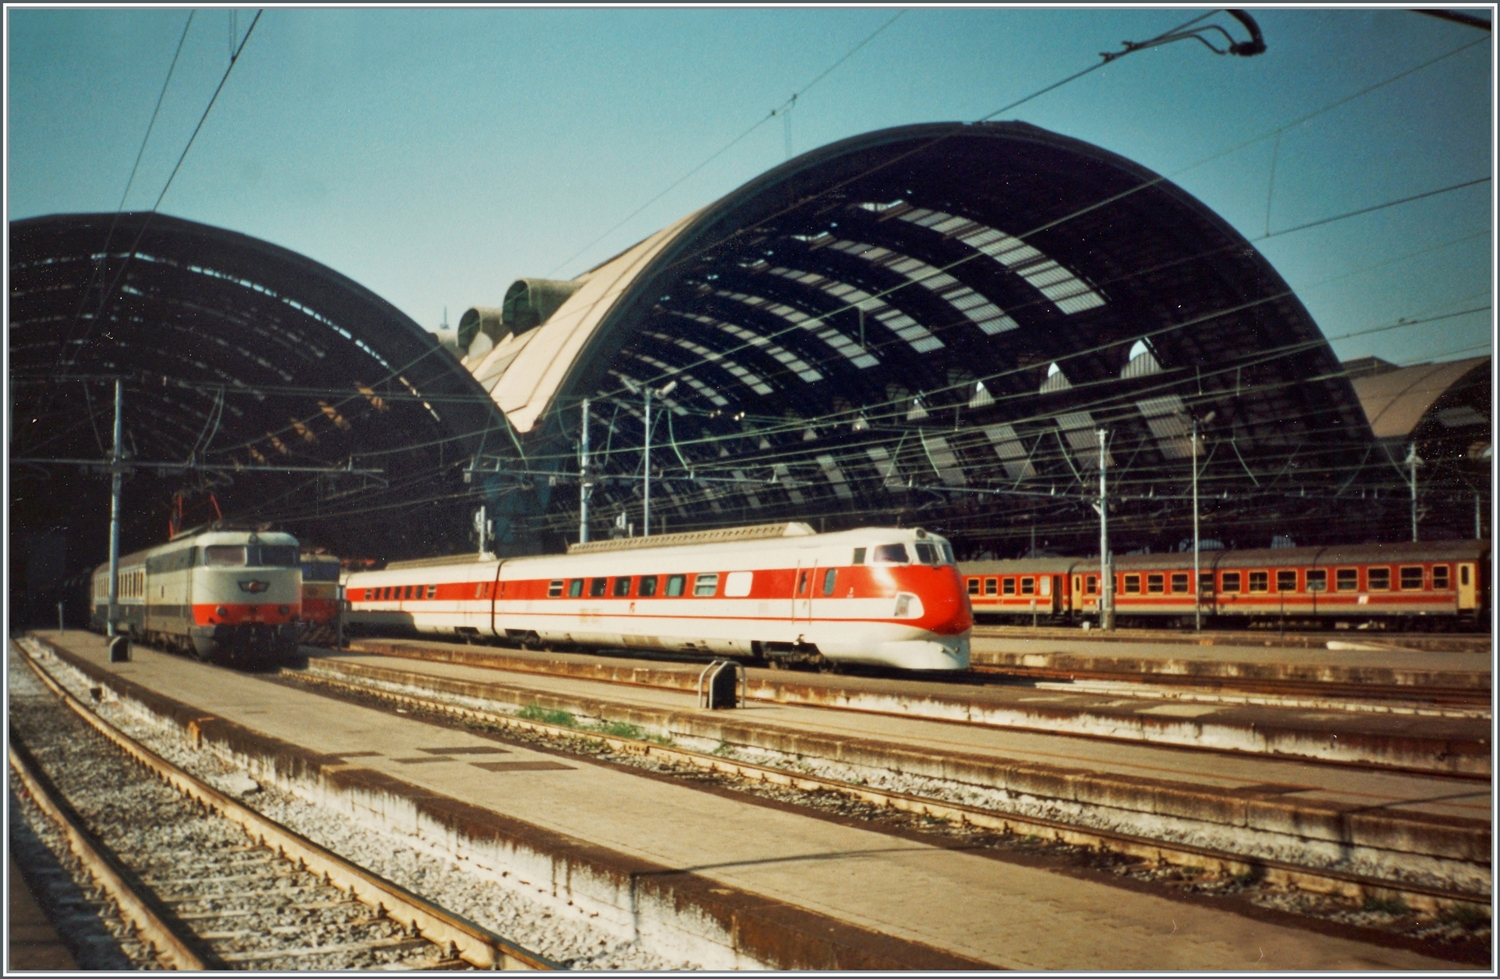 Der FS ETR 450 003 verlässt in Milano Centrale. Die 250 km/h schnellen Neigezüge standen ab 1988 im Einsatz. Sie sind von der Bauweise her das Resultat der 1971 gebauten Prototyp-Triebwagen von FIAT und dem 1975 gebauten Vorgänger ETR.401. 
Durch die Neigetechnik nannte die FS die 17 Züge  Pendolino .

Analogbild vom März 1993